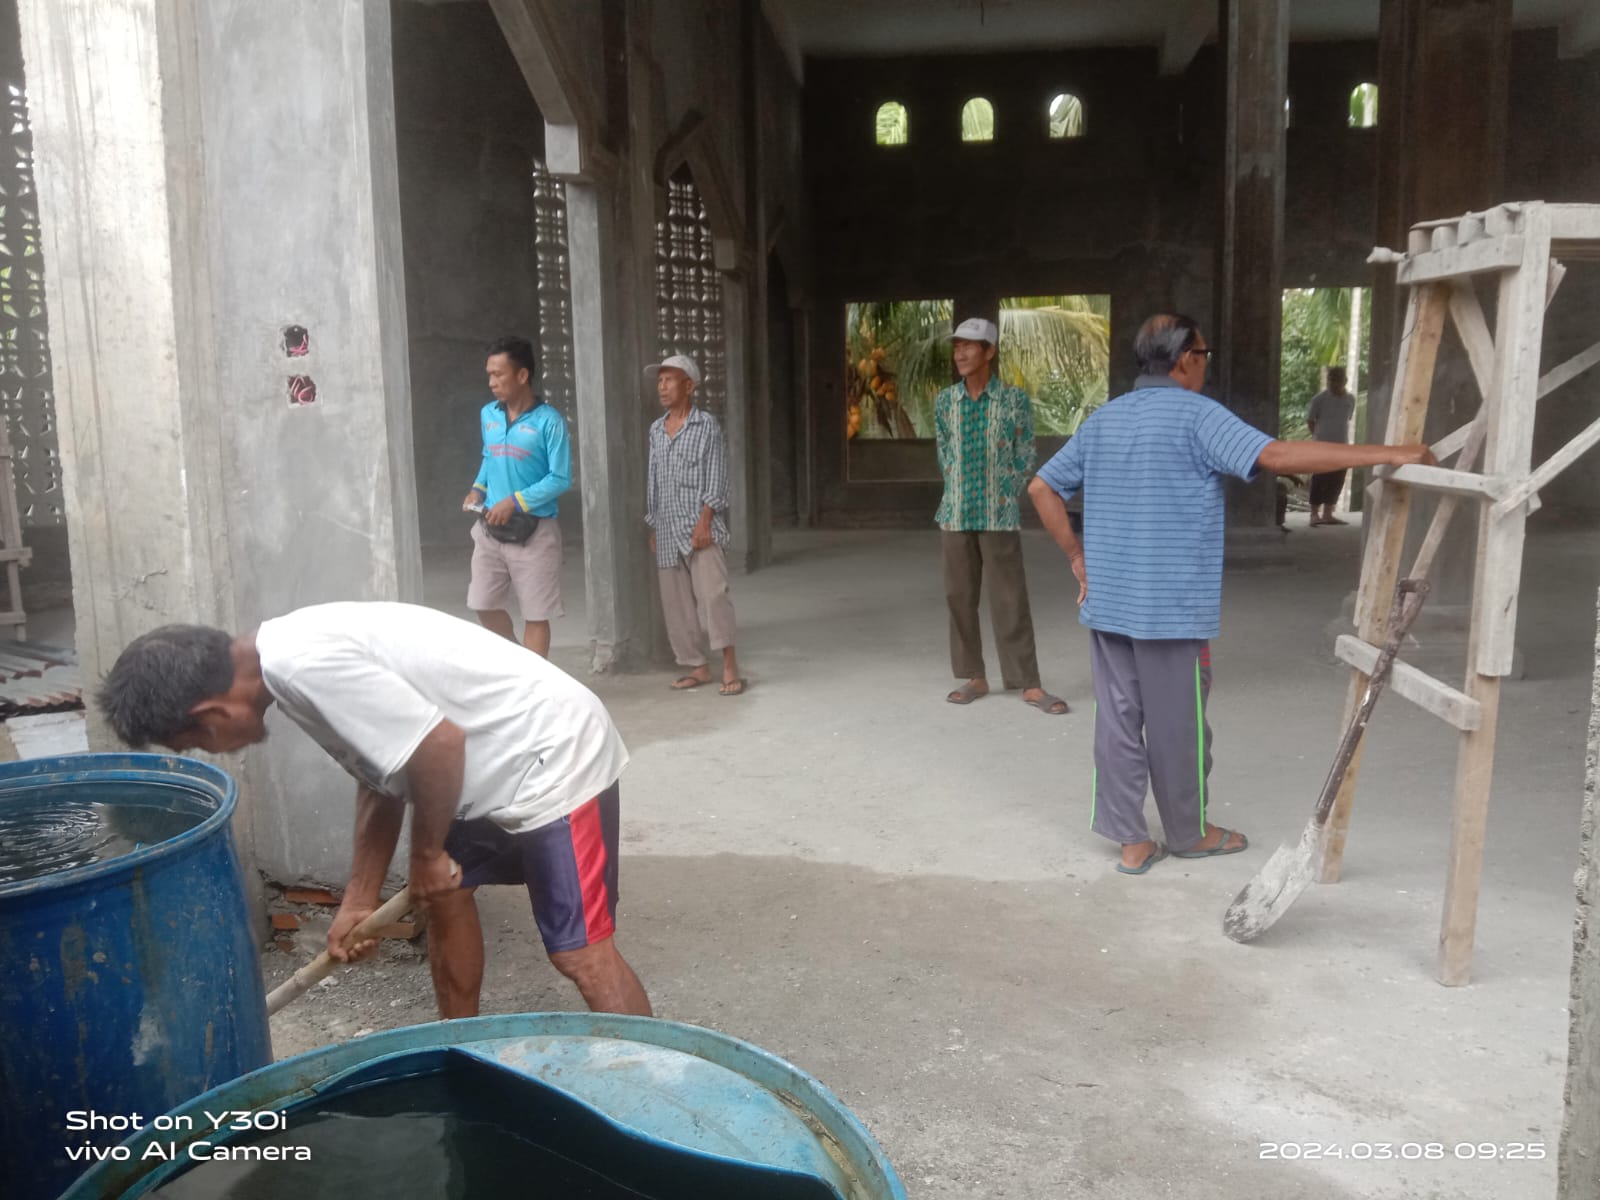 Gubernur Bengkulu Batalkan Safari Ramadhan di Masjid Darul Muttaqin Desa Mentiring Kaur, Ini Kata Kades